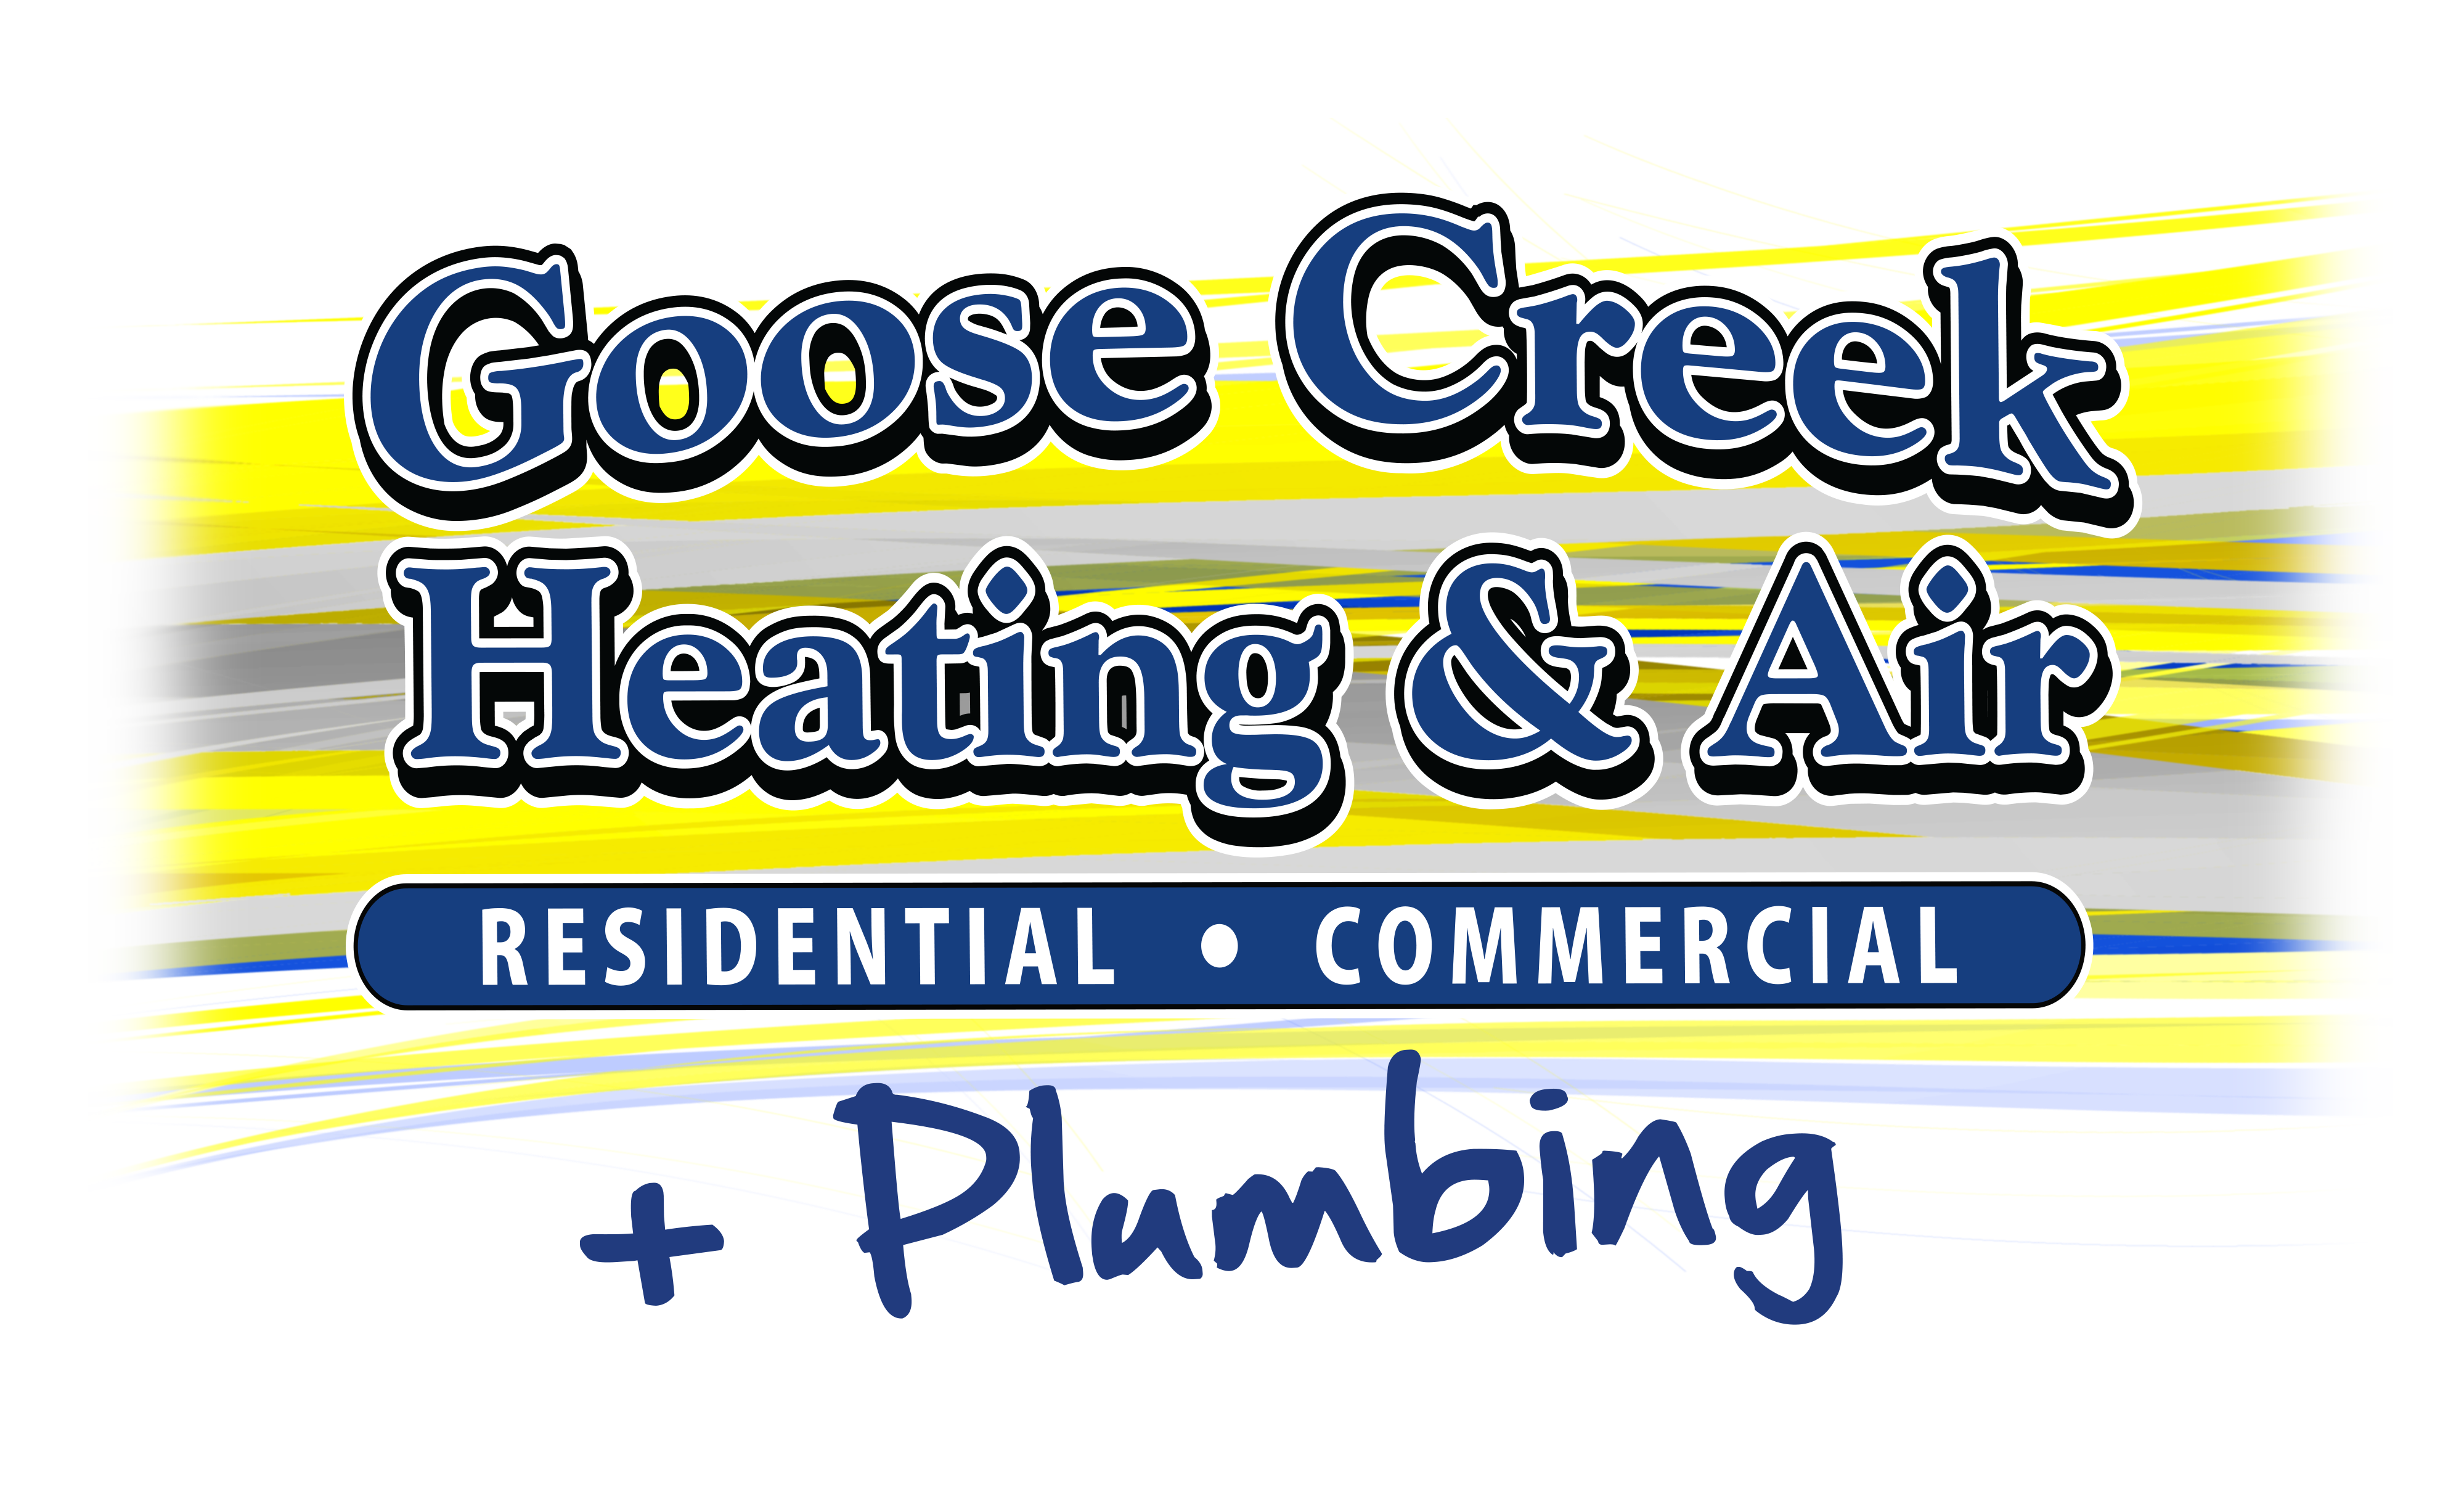 Goose Creek Heating & Air